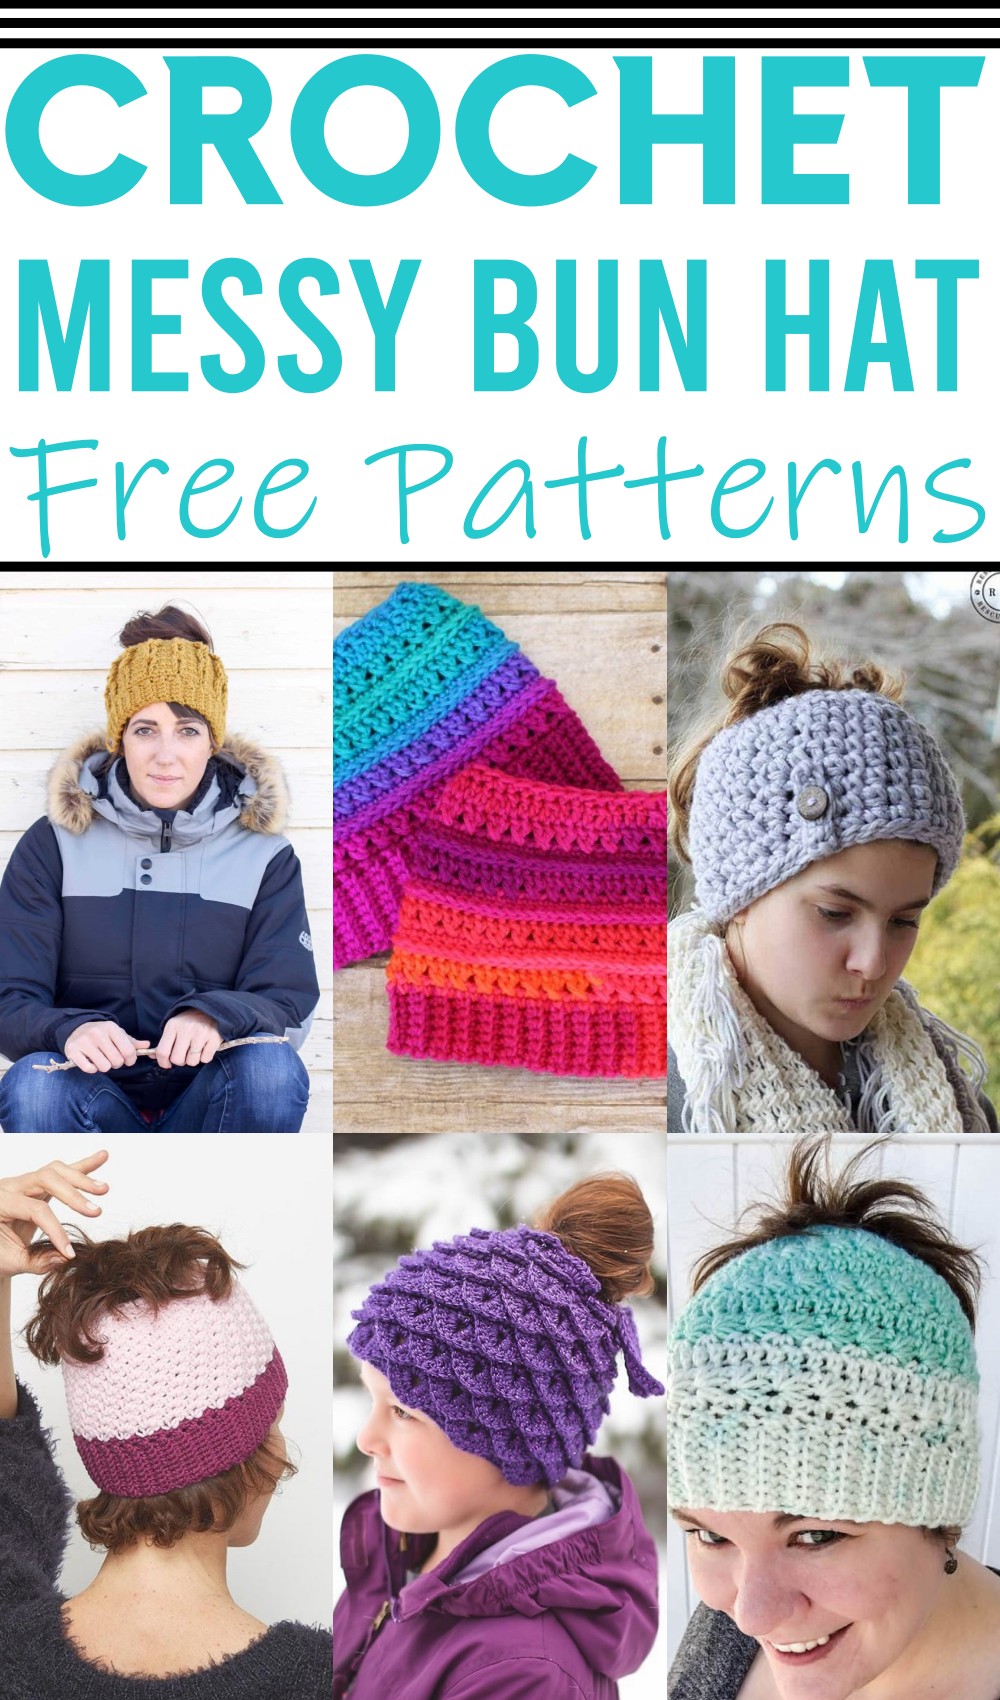 Free Crochet Messy Bun Hat Patterns 1